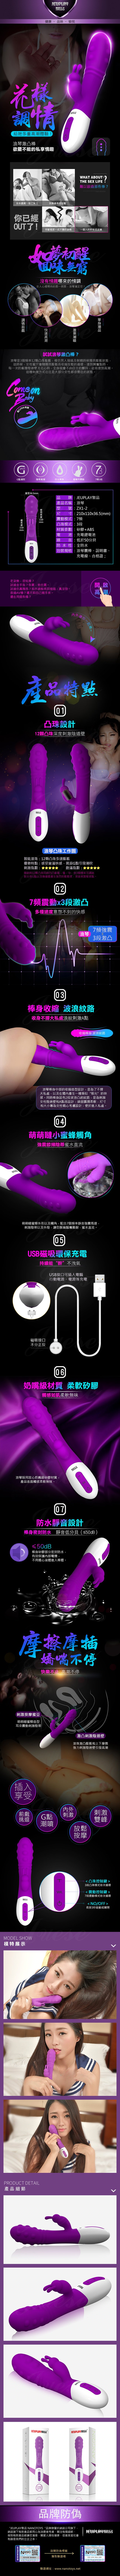 浪琴 凸珠膨脹式USB充電防水震動按摩棒-(3段變頻+12顆凸珠膨脹)(特)